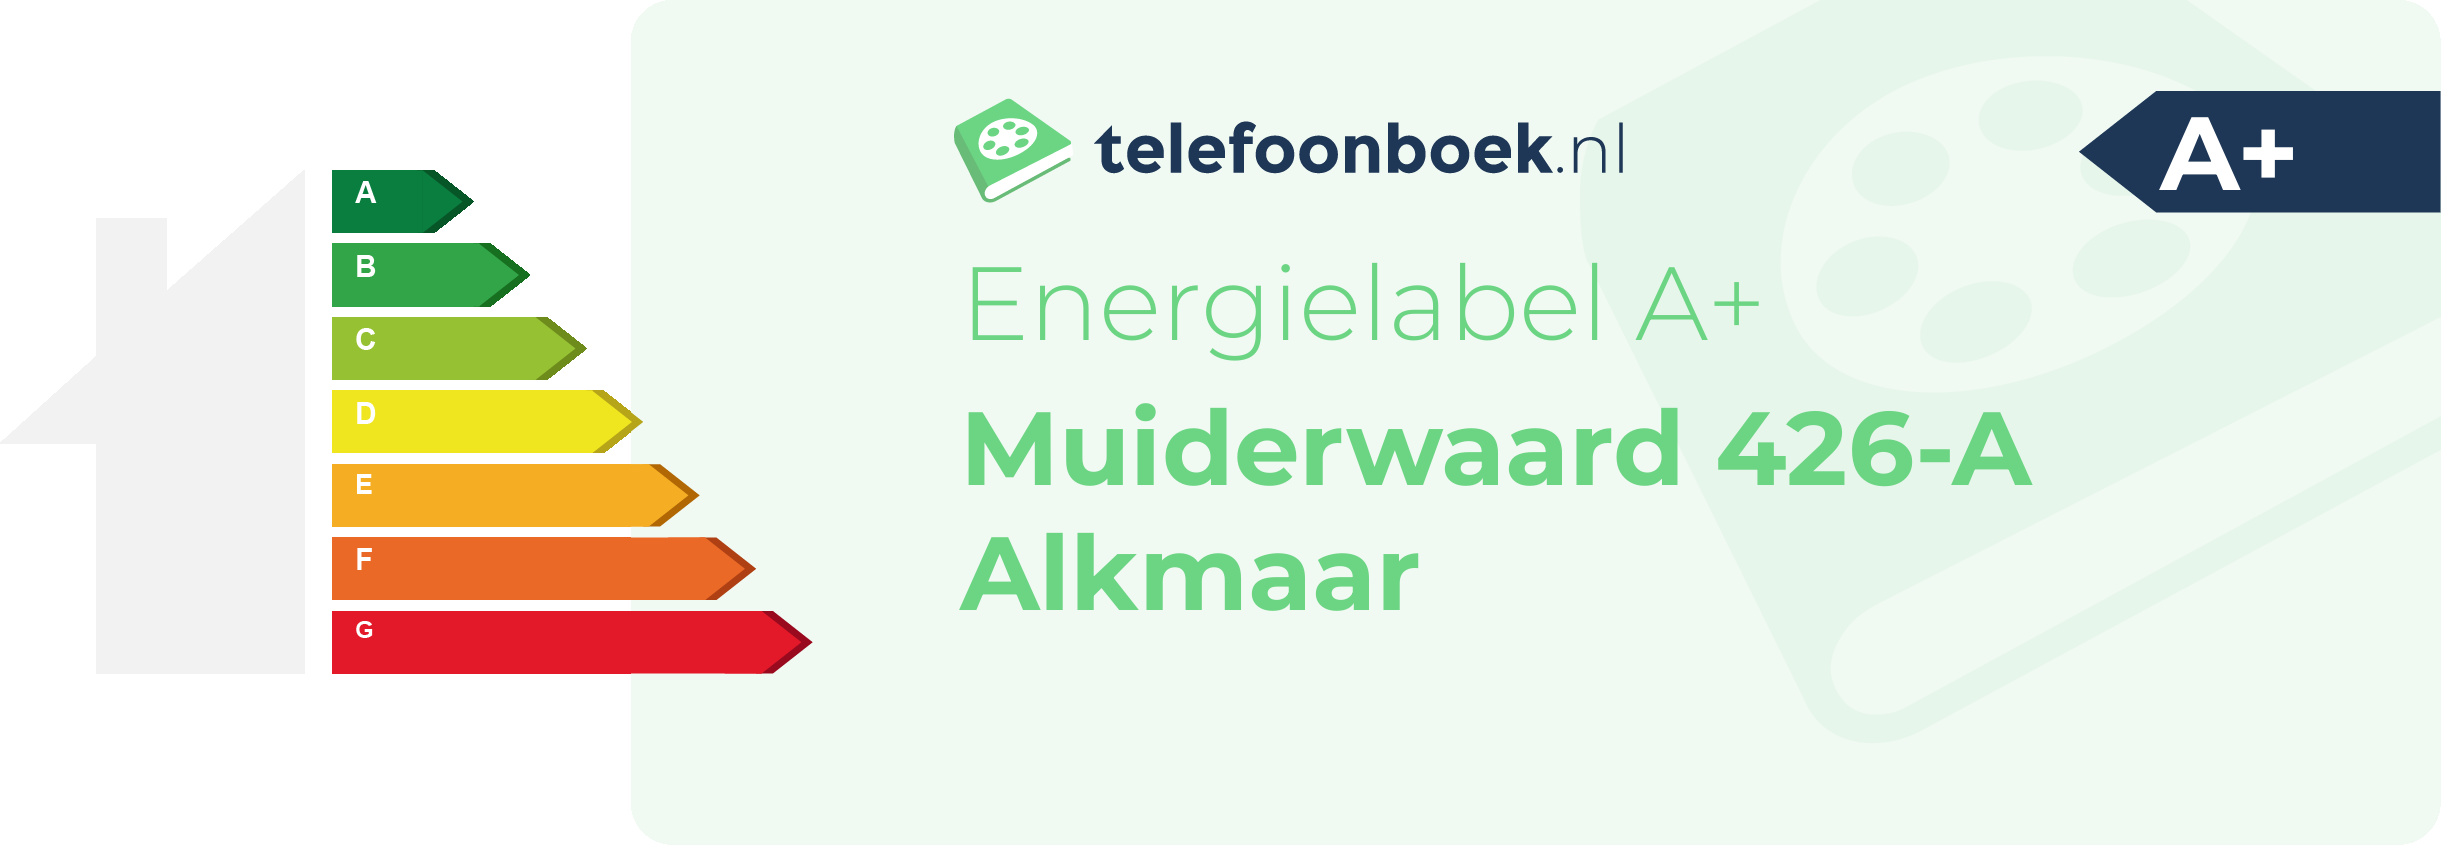 Energielabel Muiderwaard 426-A Alkmaar